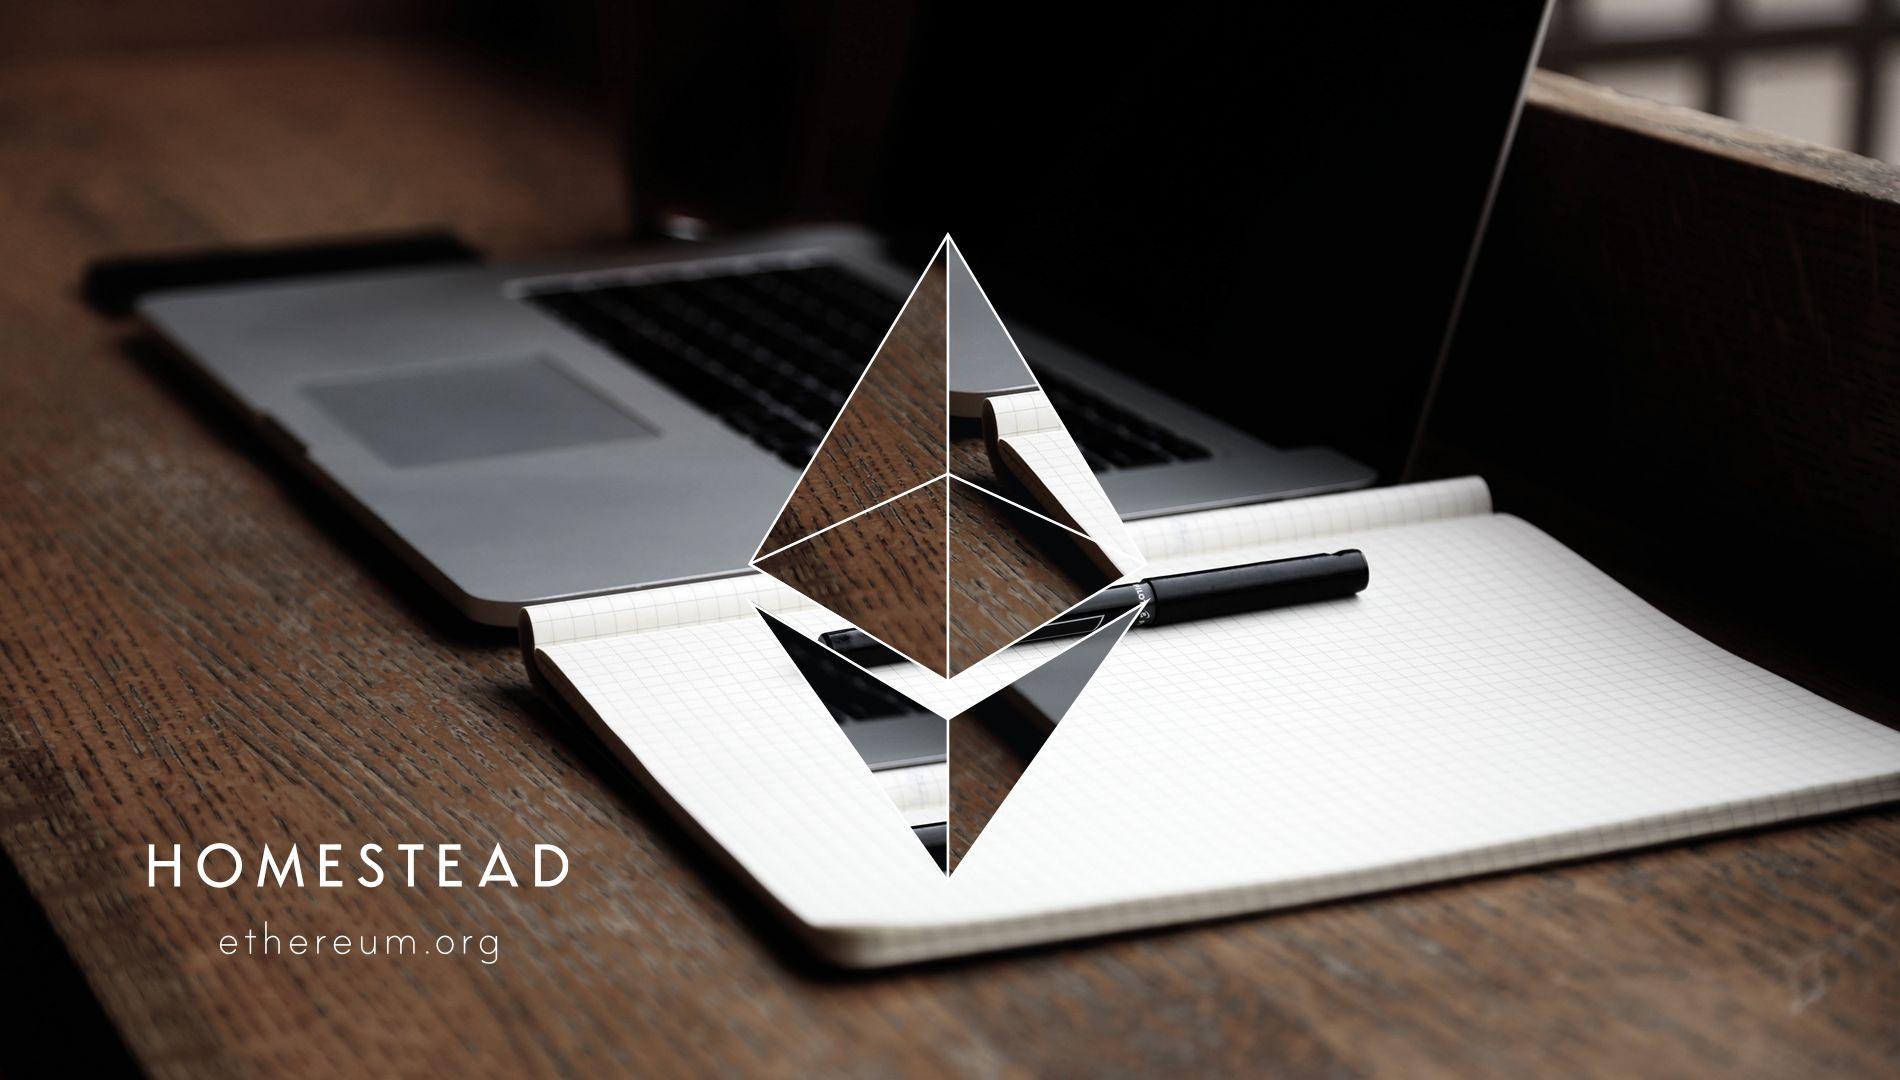 Etherum Logo - Asset Downloads